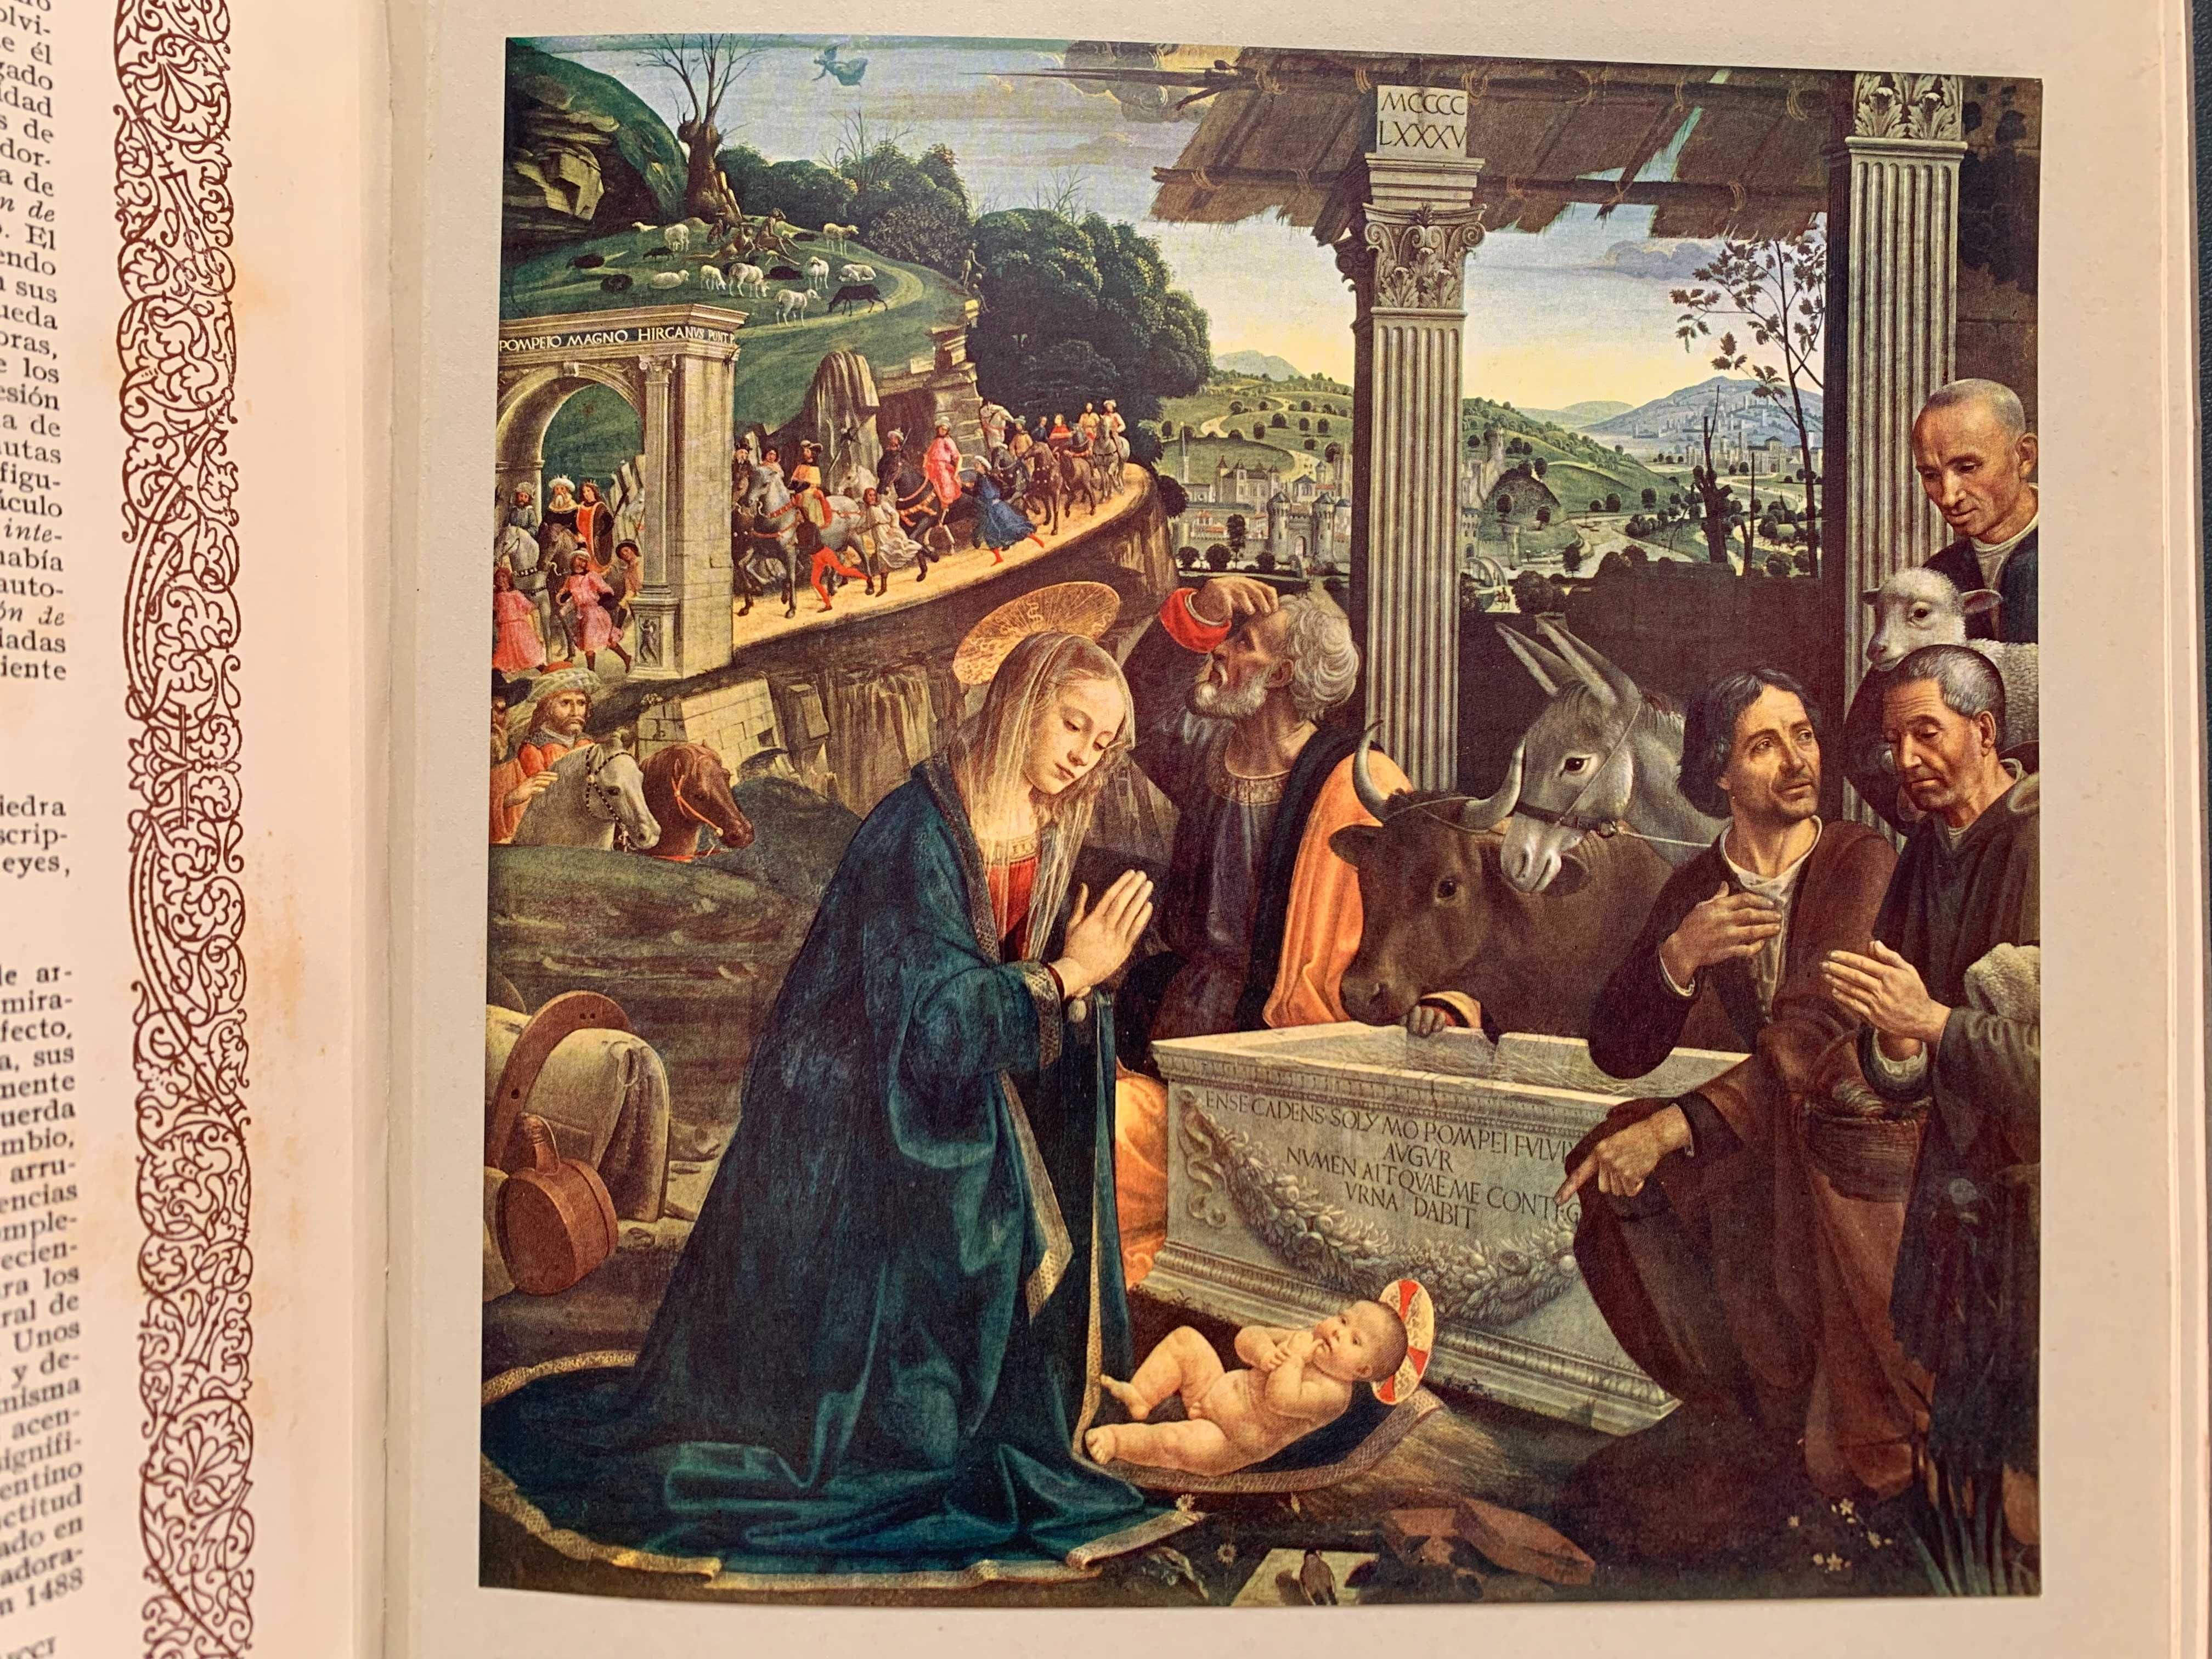 Альбом"Галерея картин Европи-Музеї Флоренції"60 репр.картин. 25,5*32,5